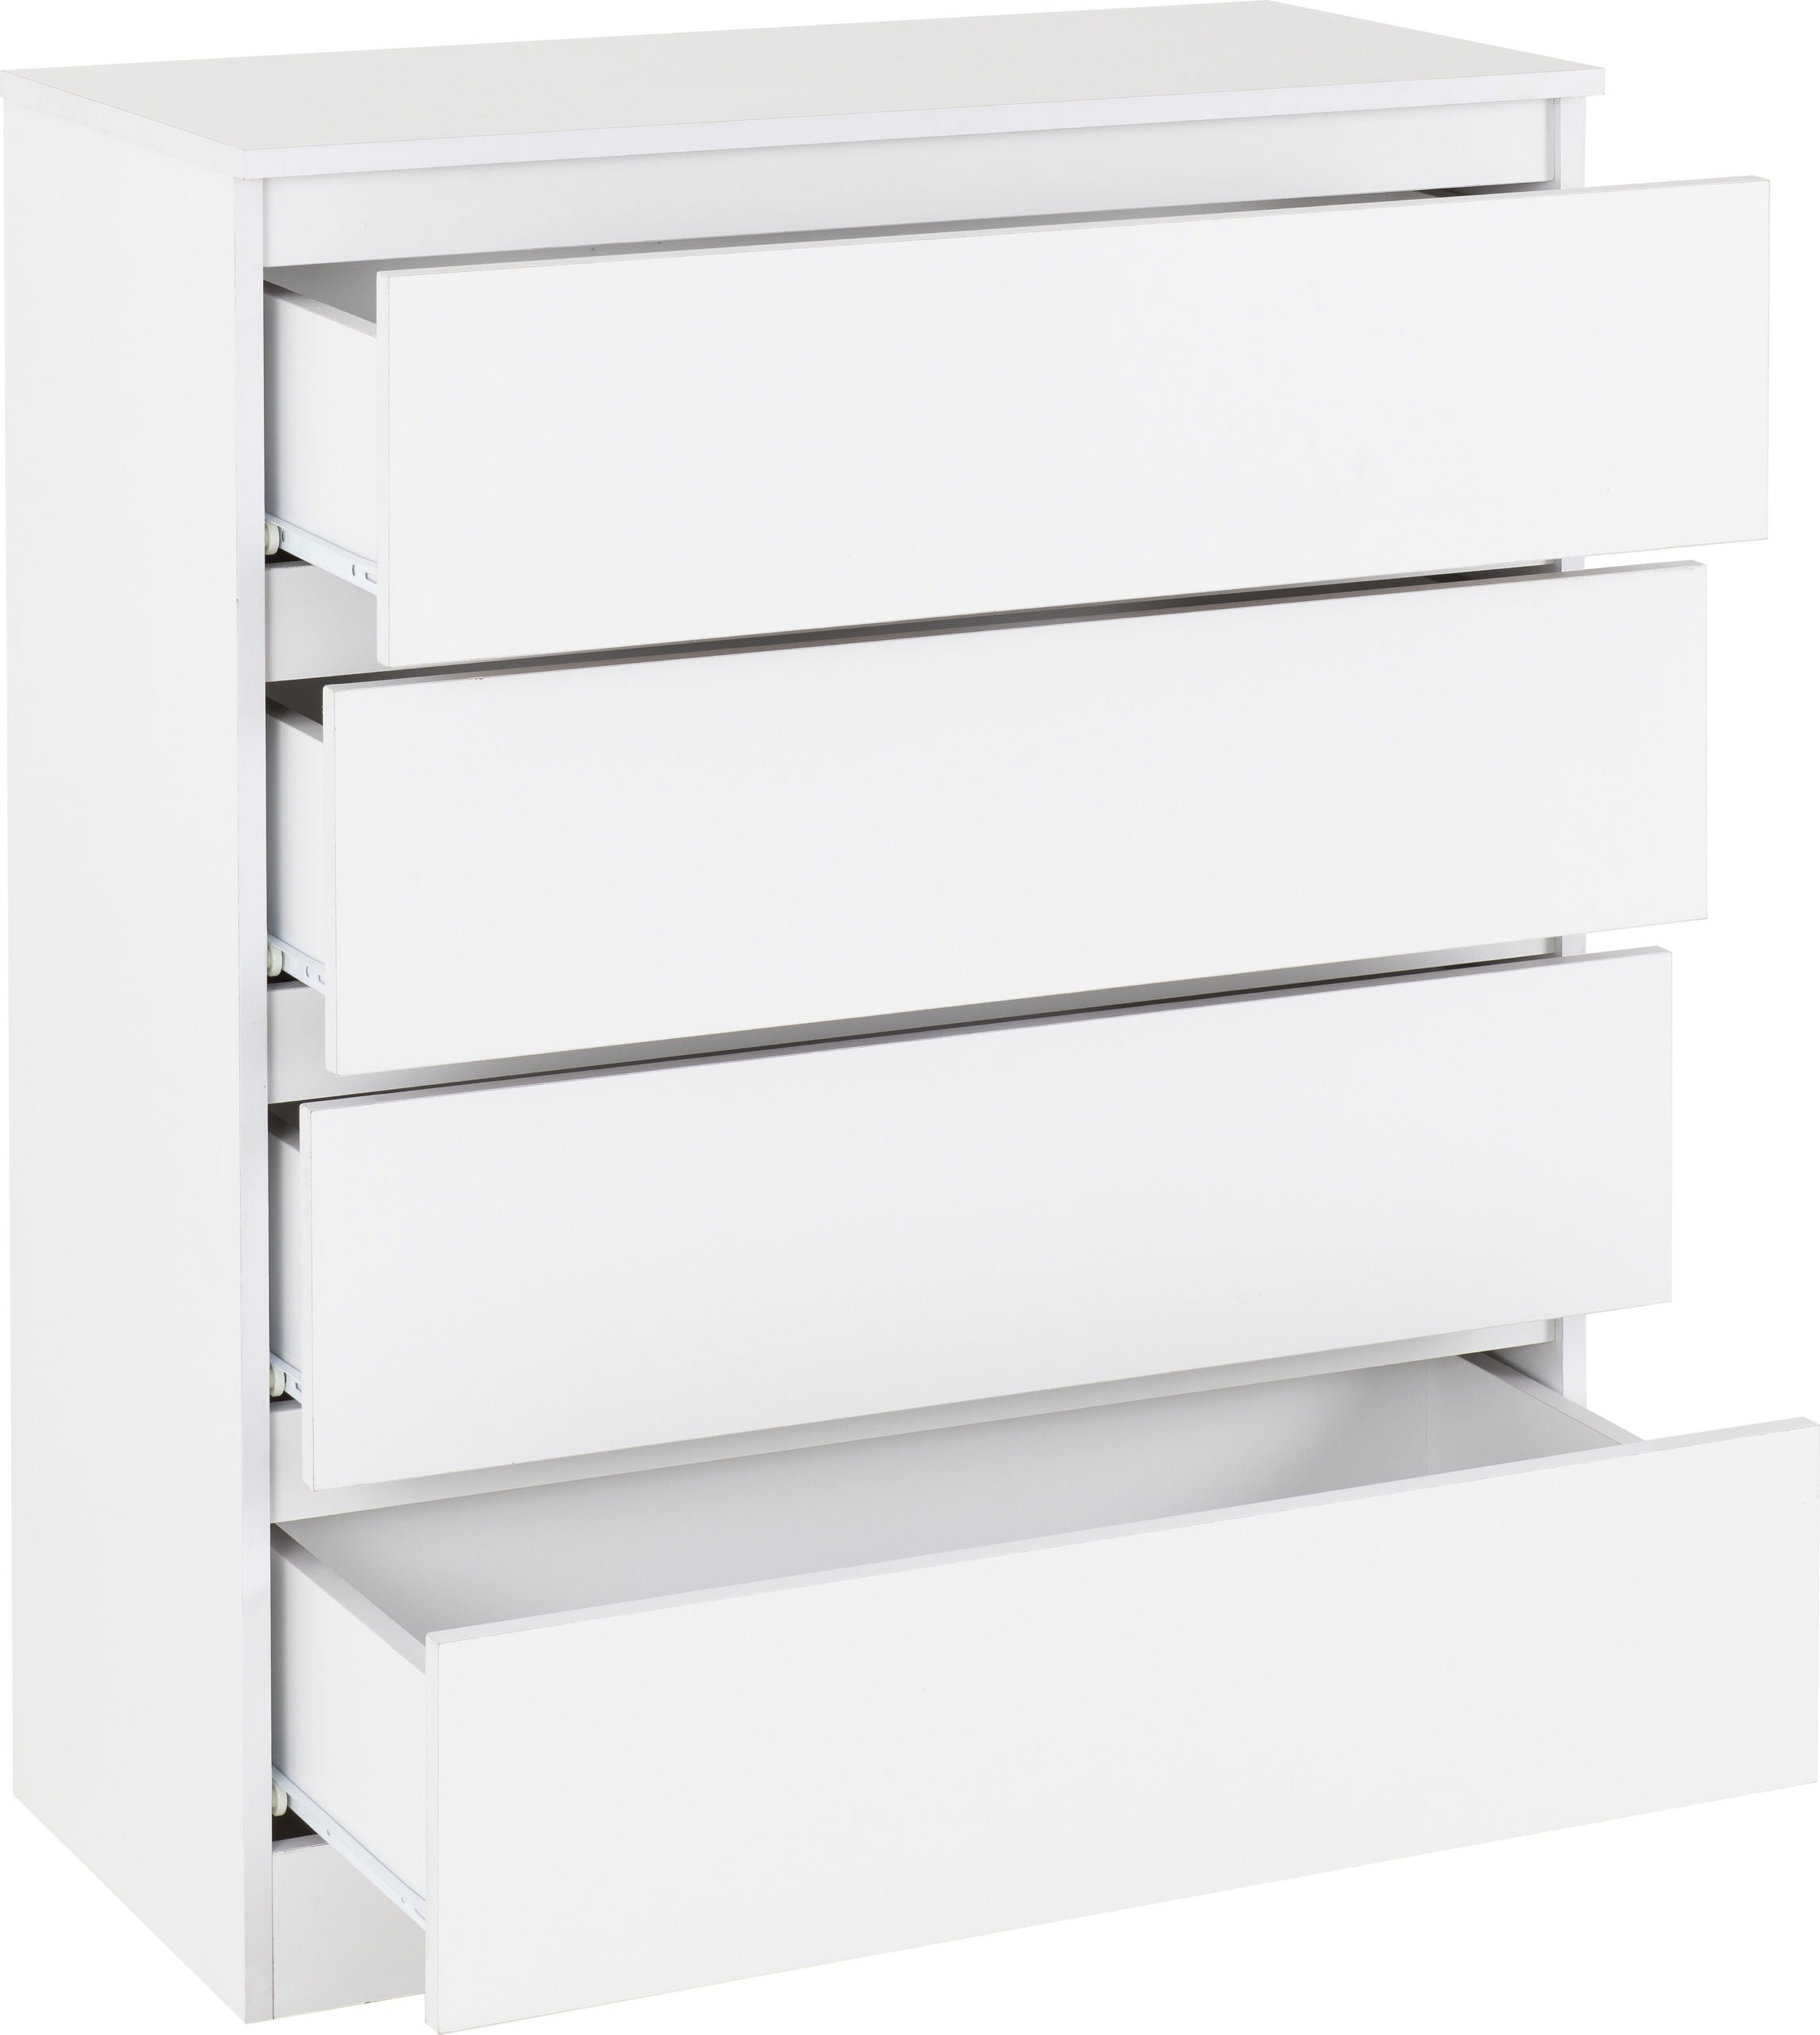 white 4 drawer dresser